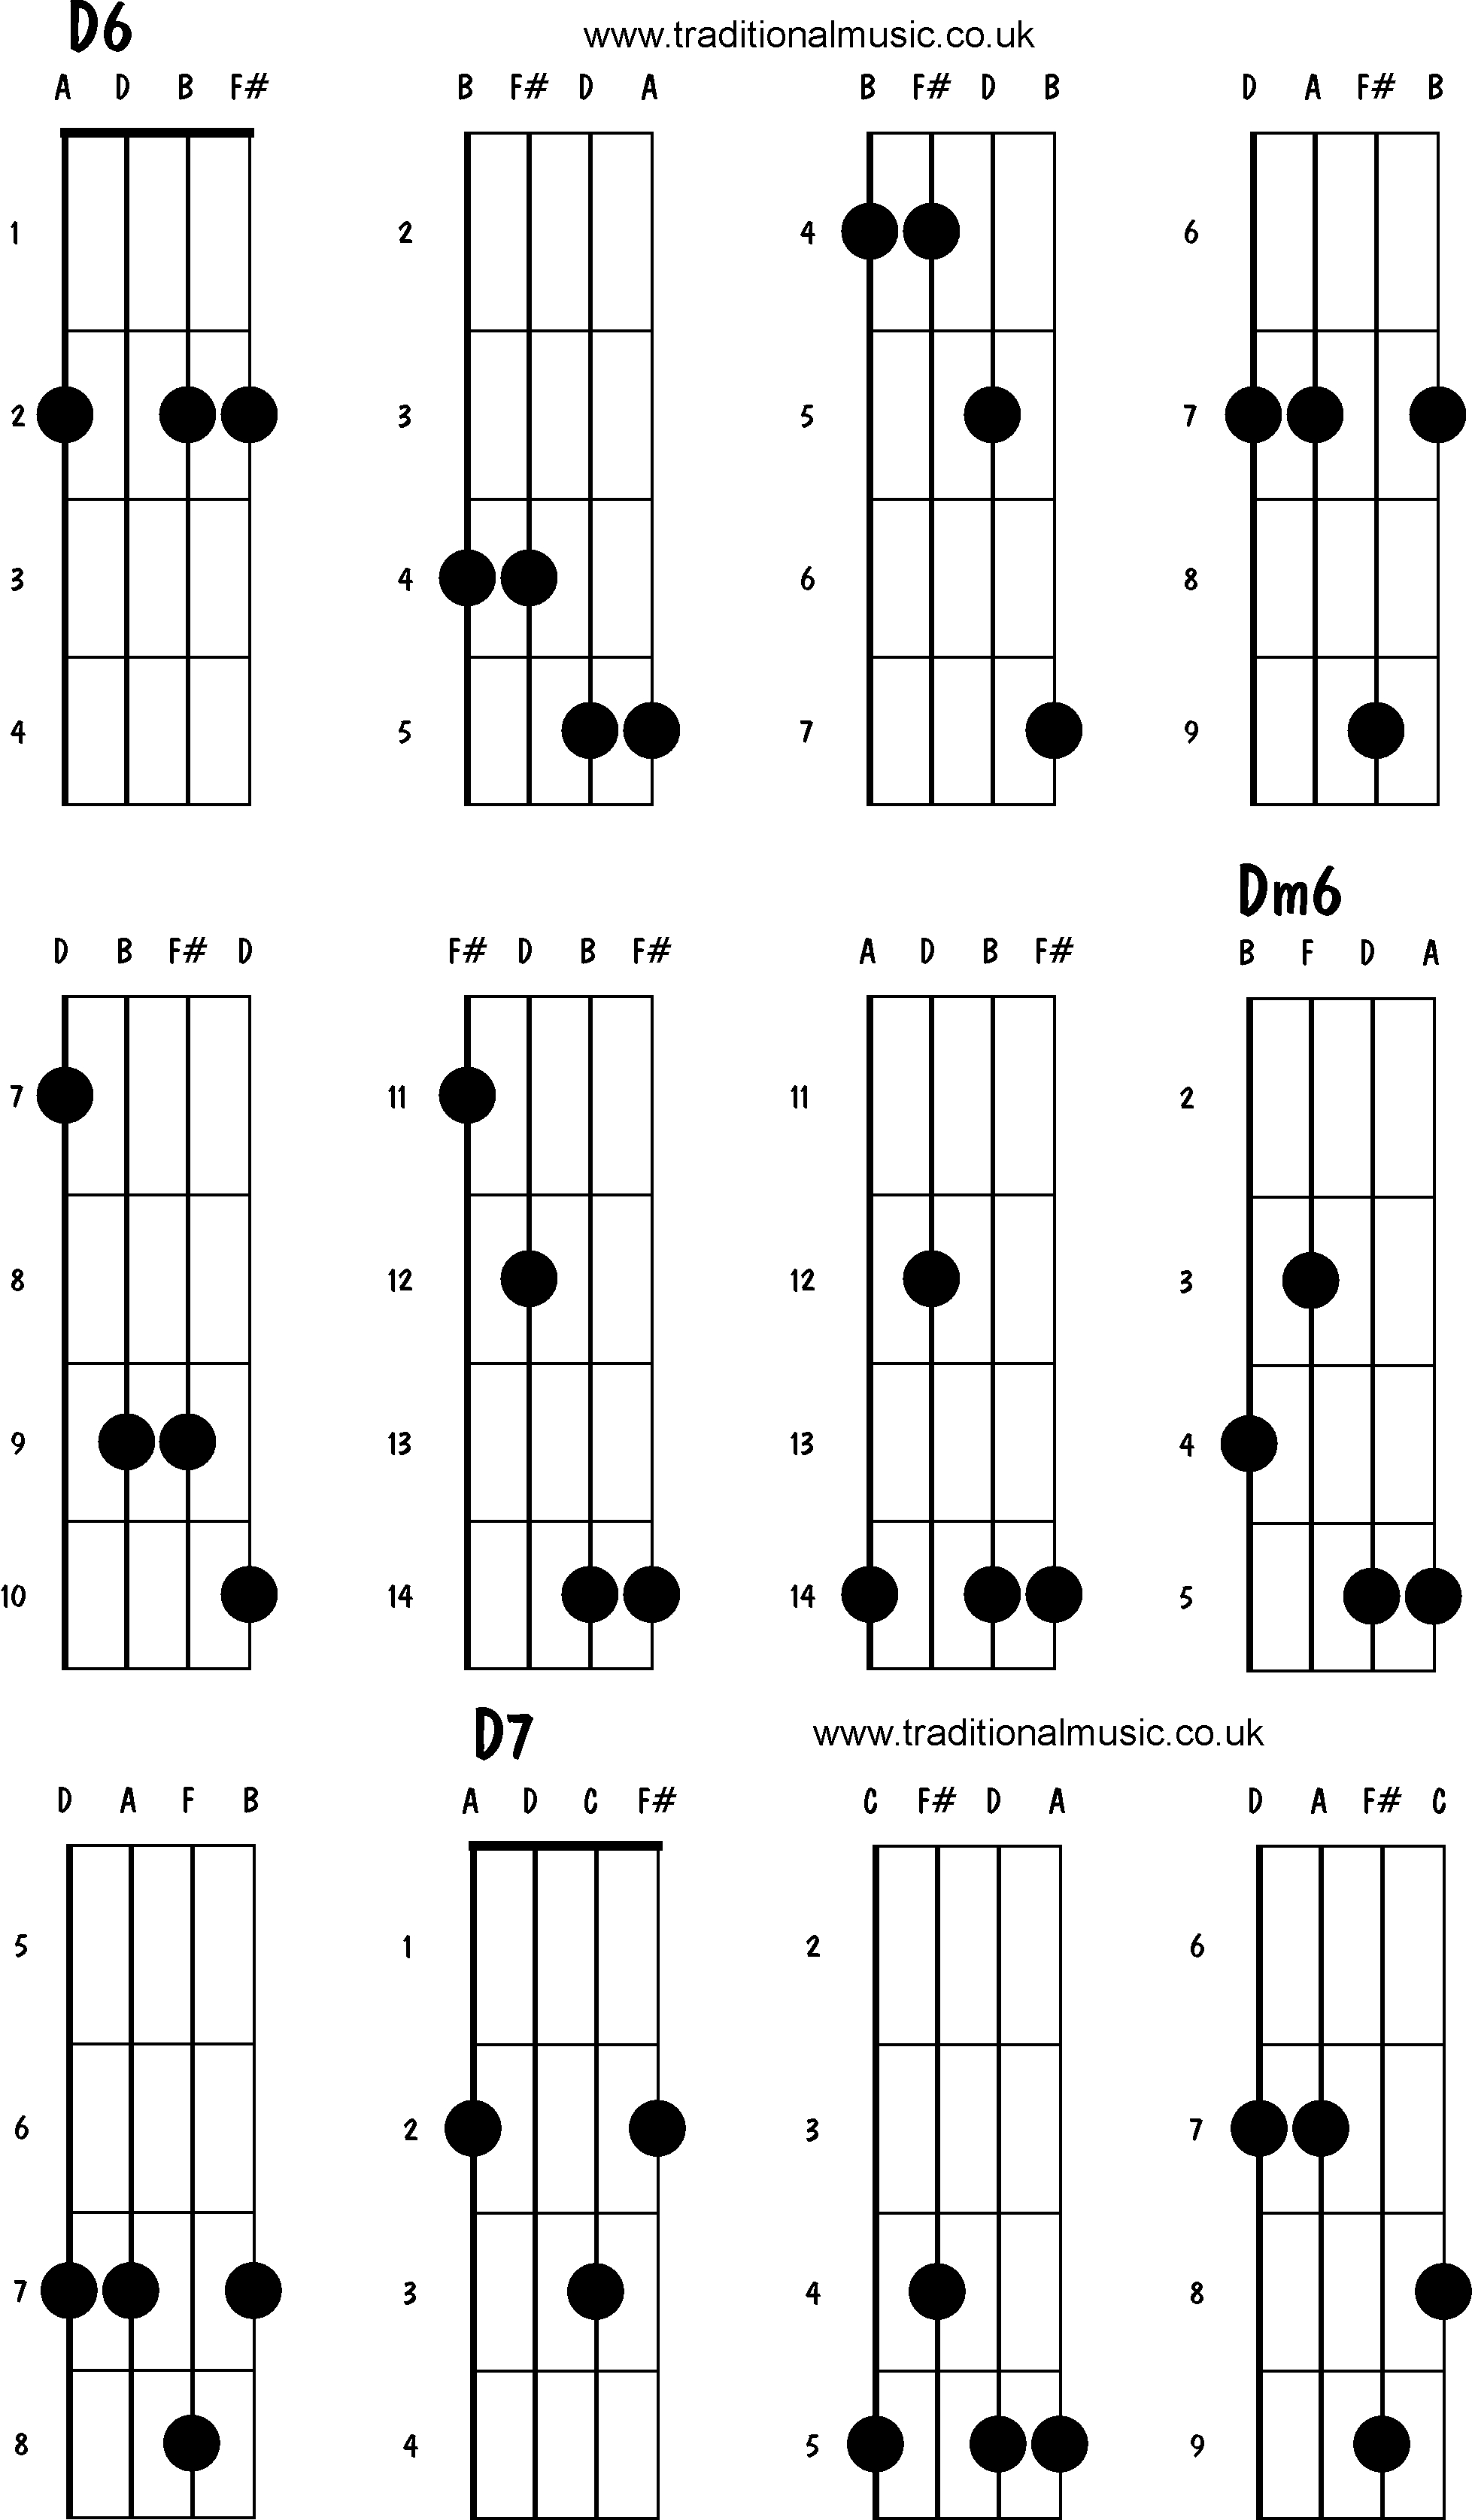 Mandolin Chord Chart Mandolin Chords Advanced D6 Dm6 D7